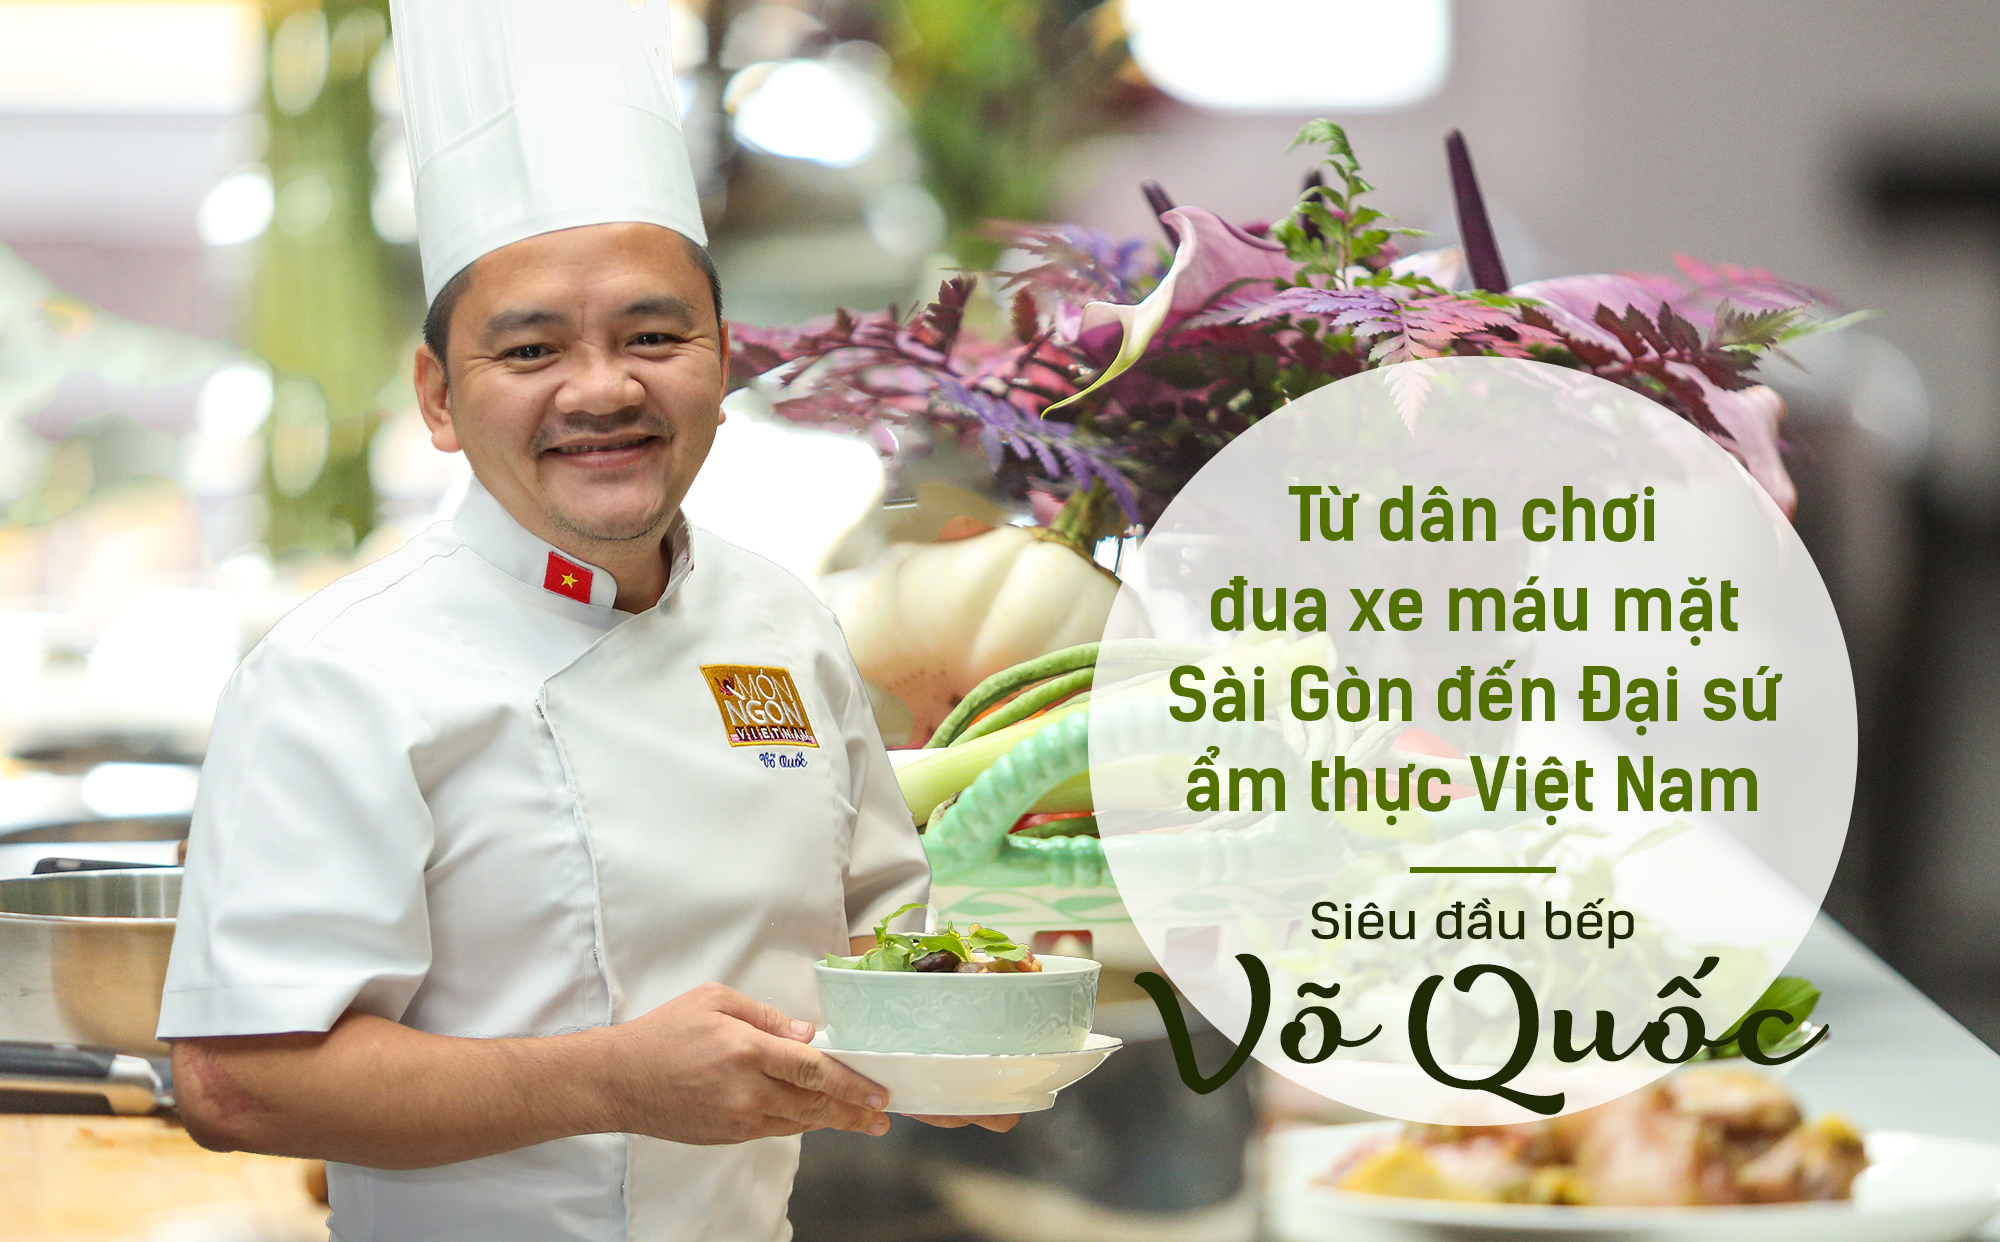 Siêu đầu bếp Võ Quốc: Từ dân chơi đua xe máu mặt Sài Gòn đến Đại sứ ẩm thực Việt Nam